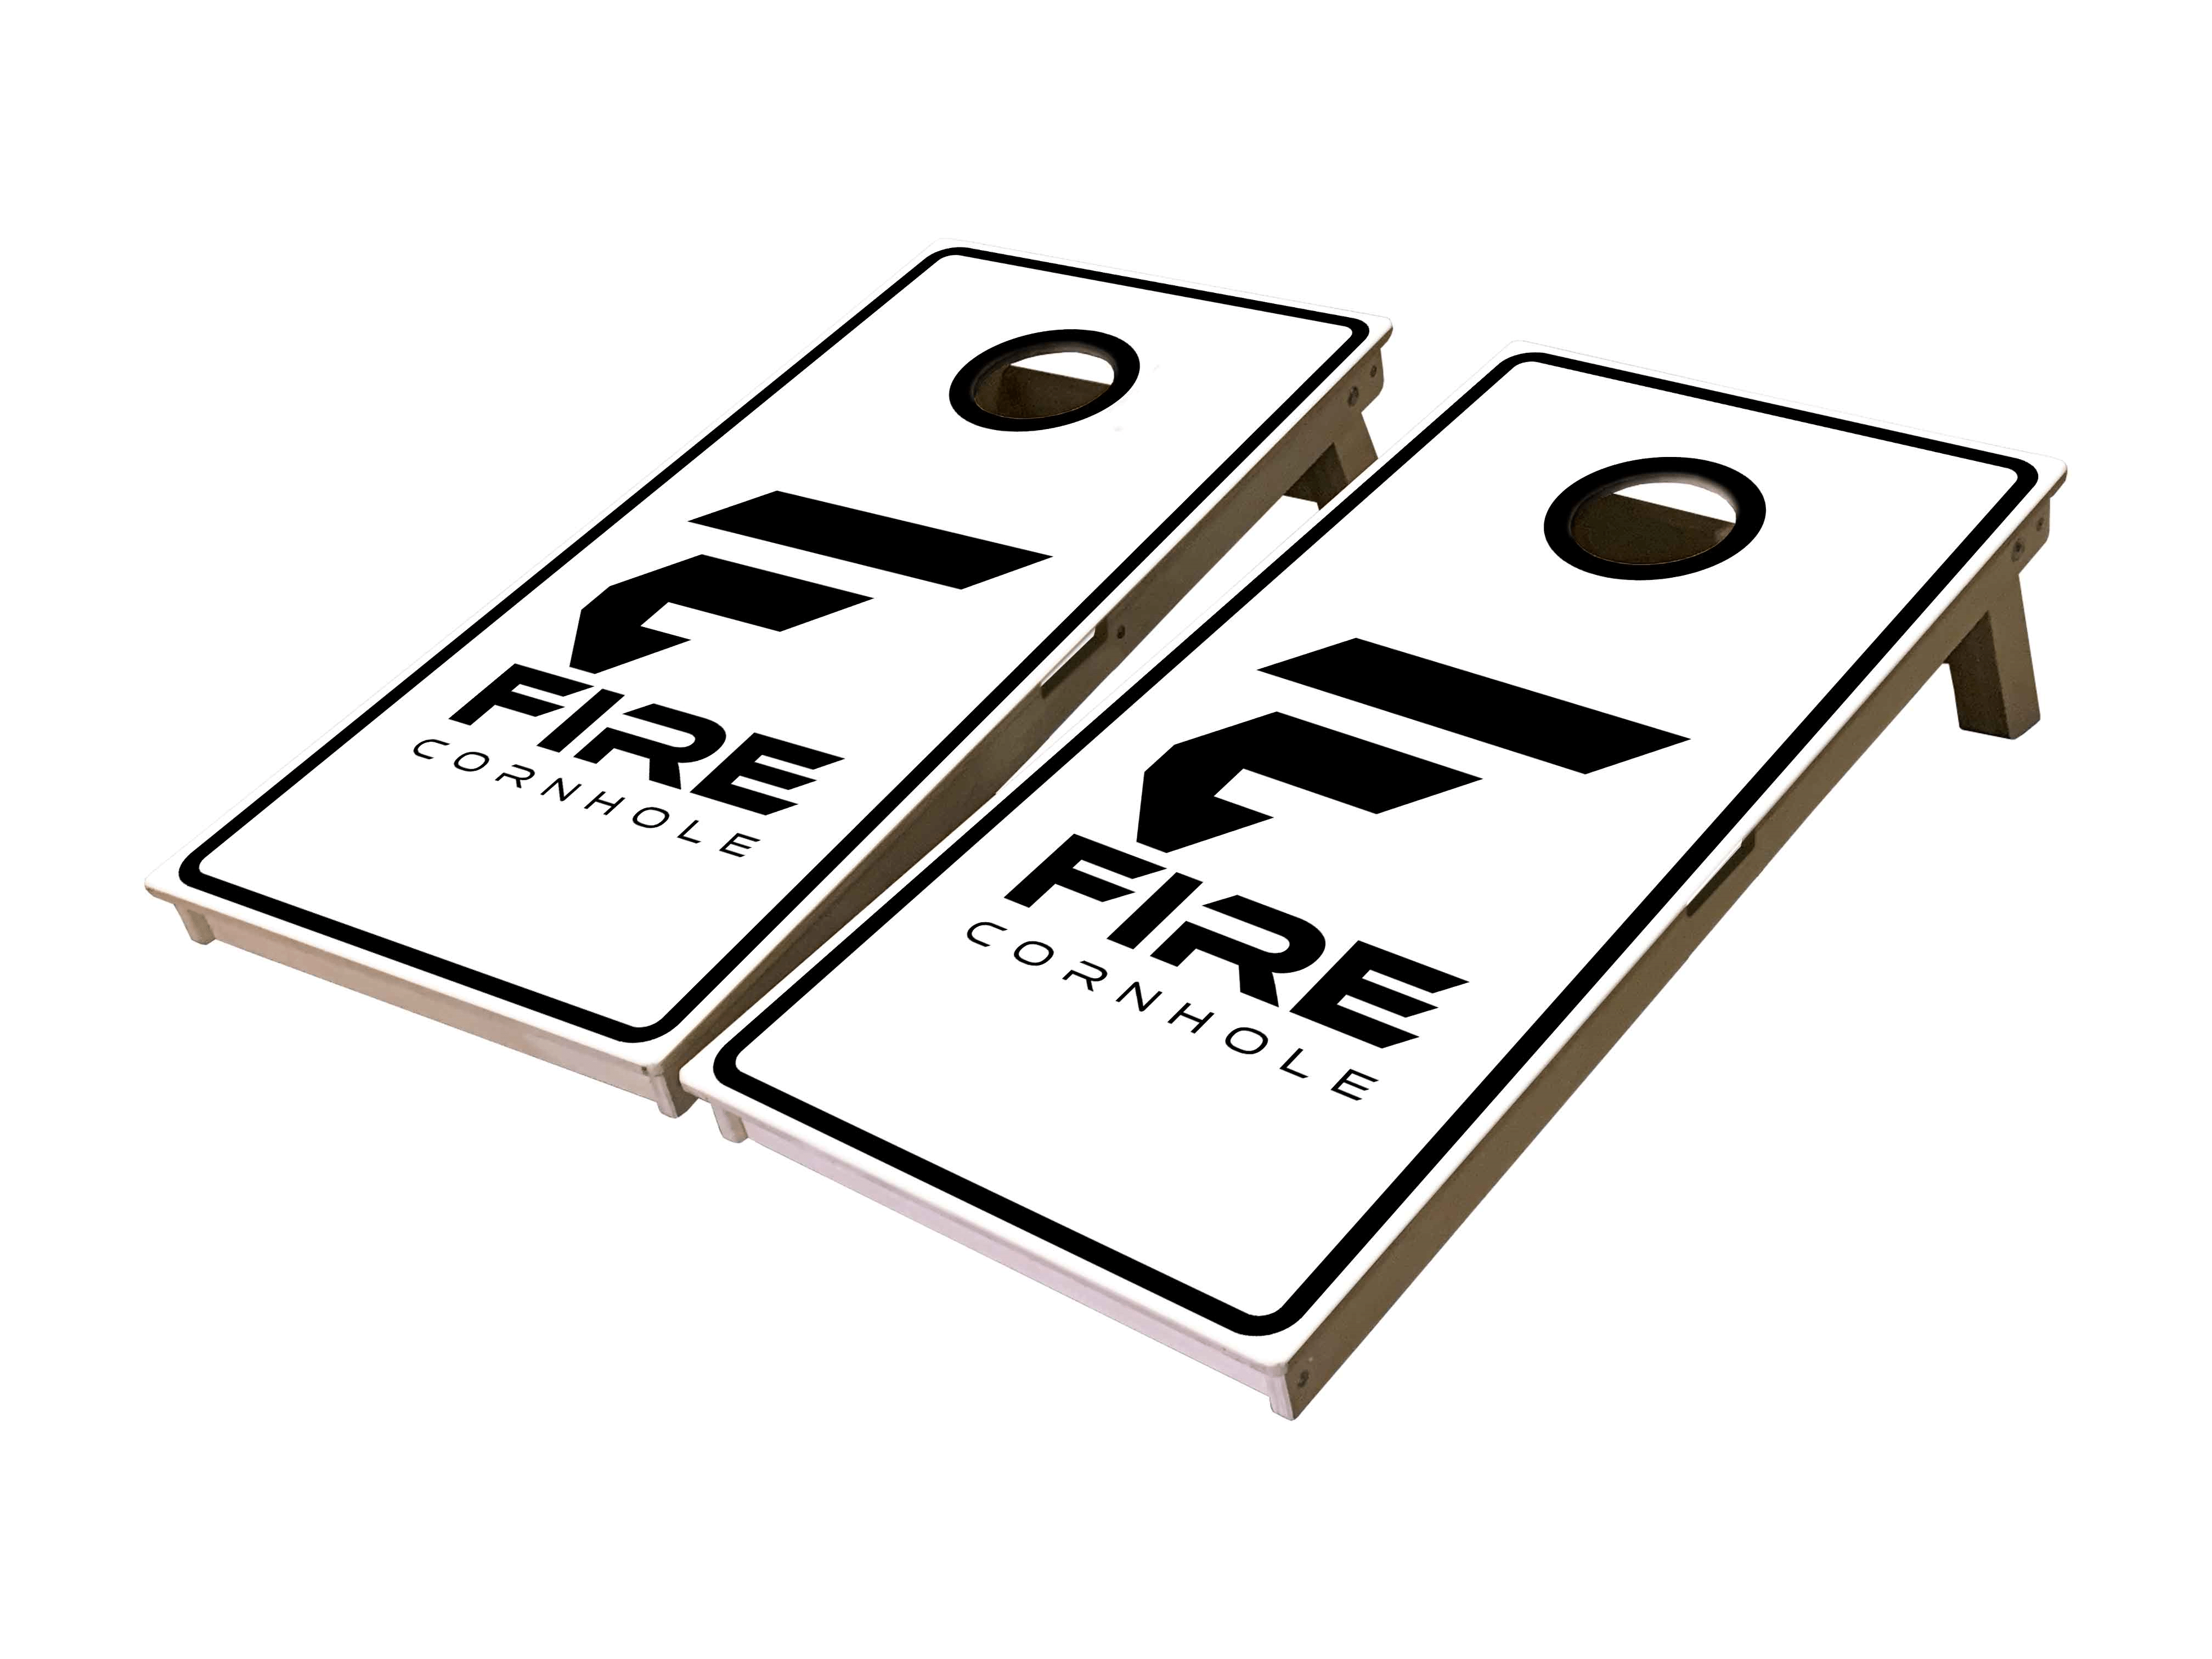 Fire Cornhole boards in white and black